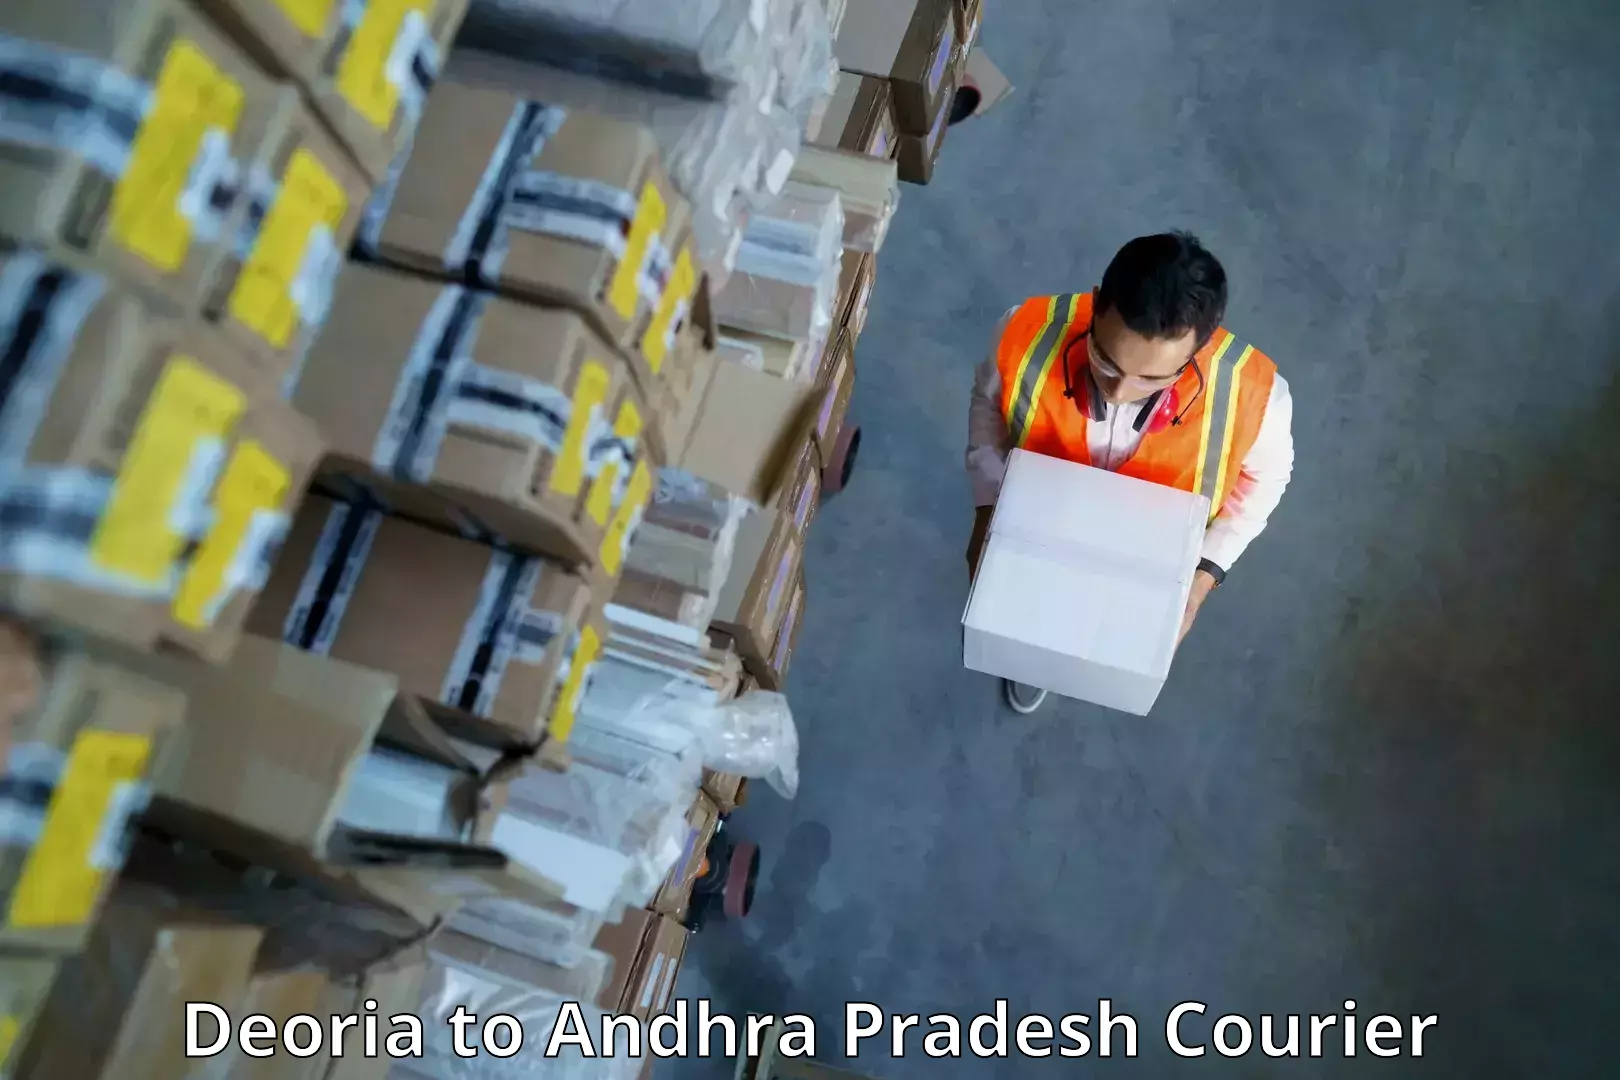 Courier service comparison Deoria to Visakhapatnam Port